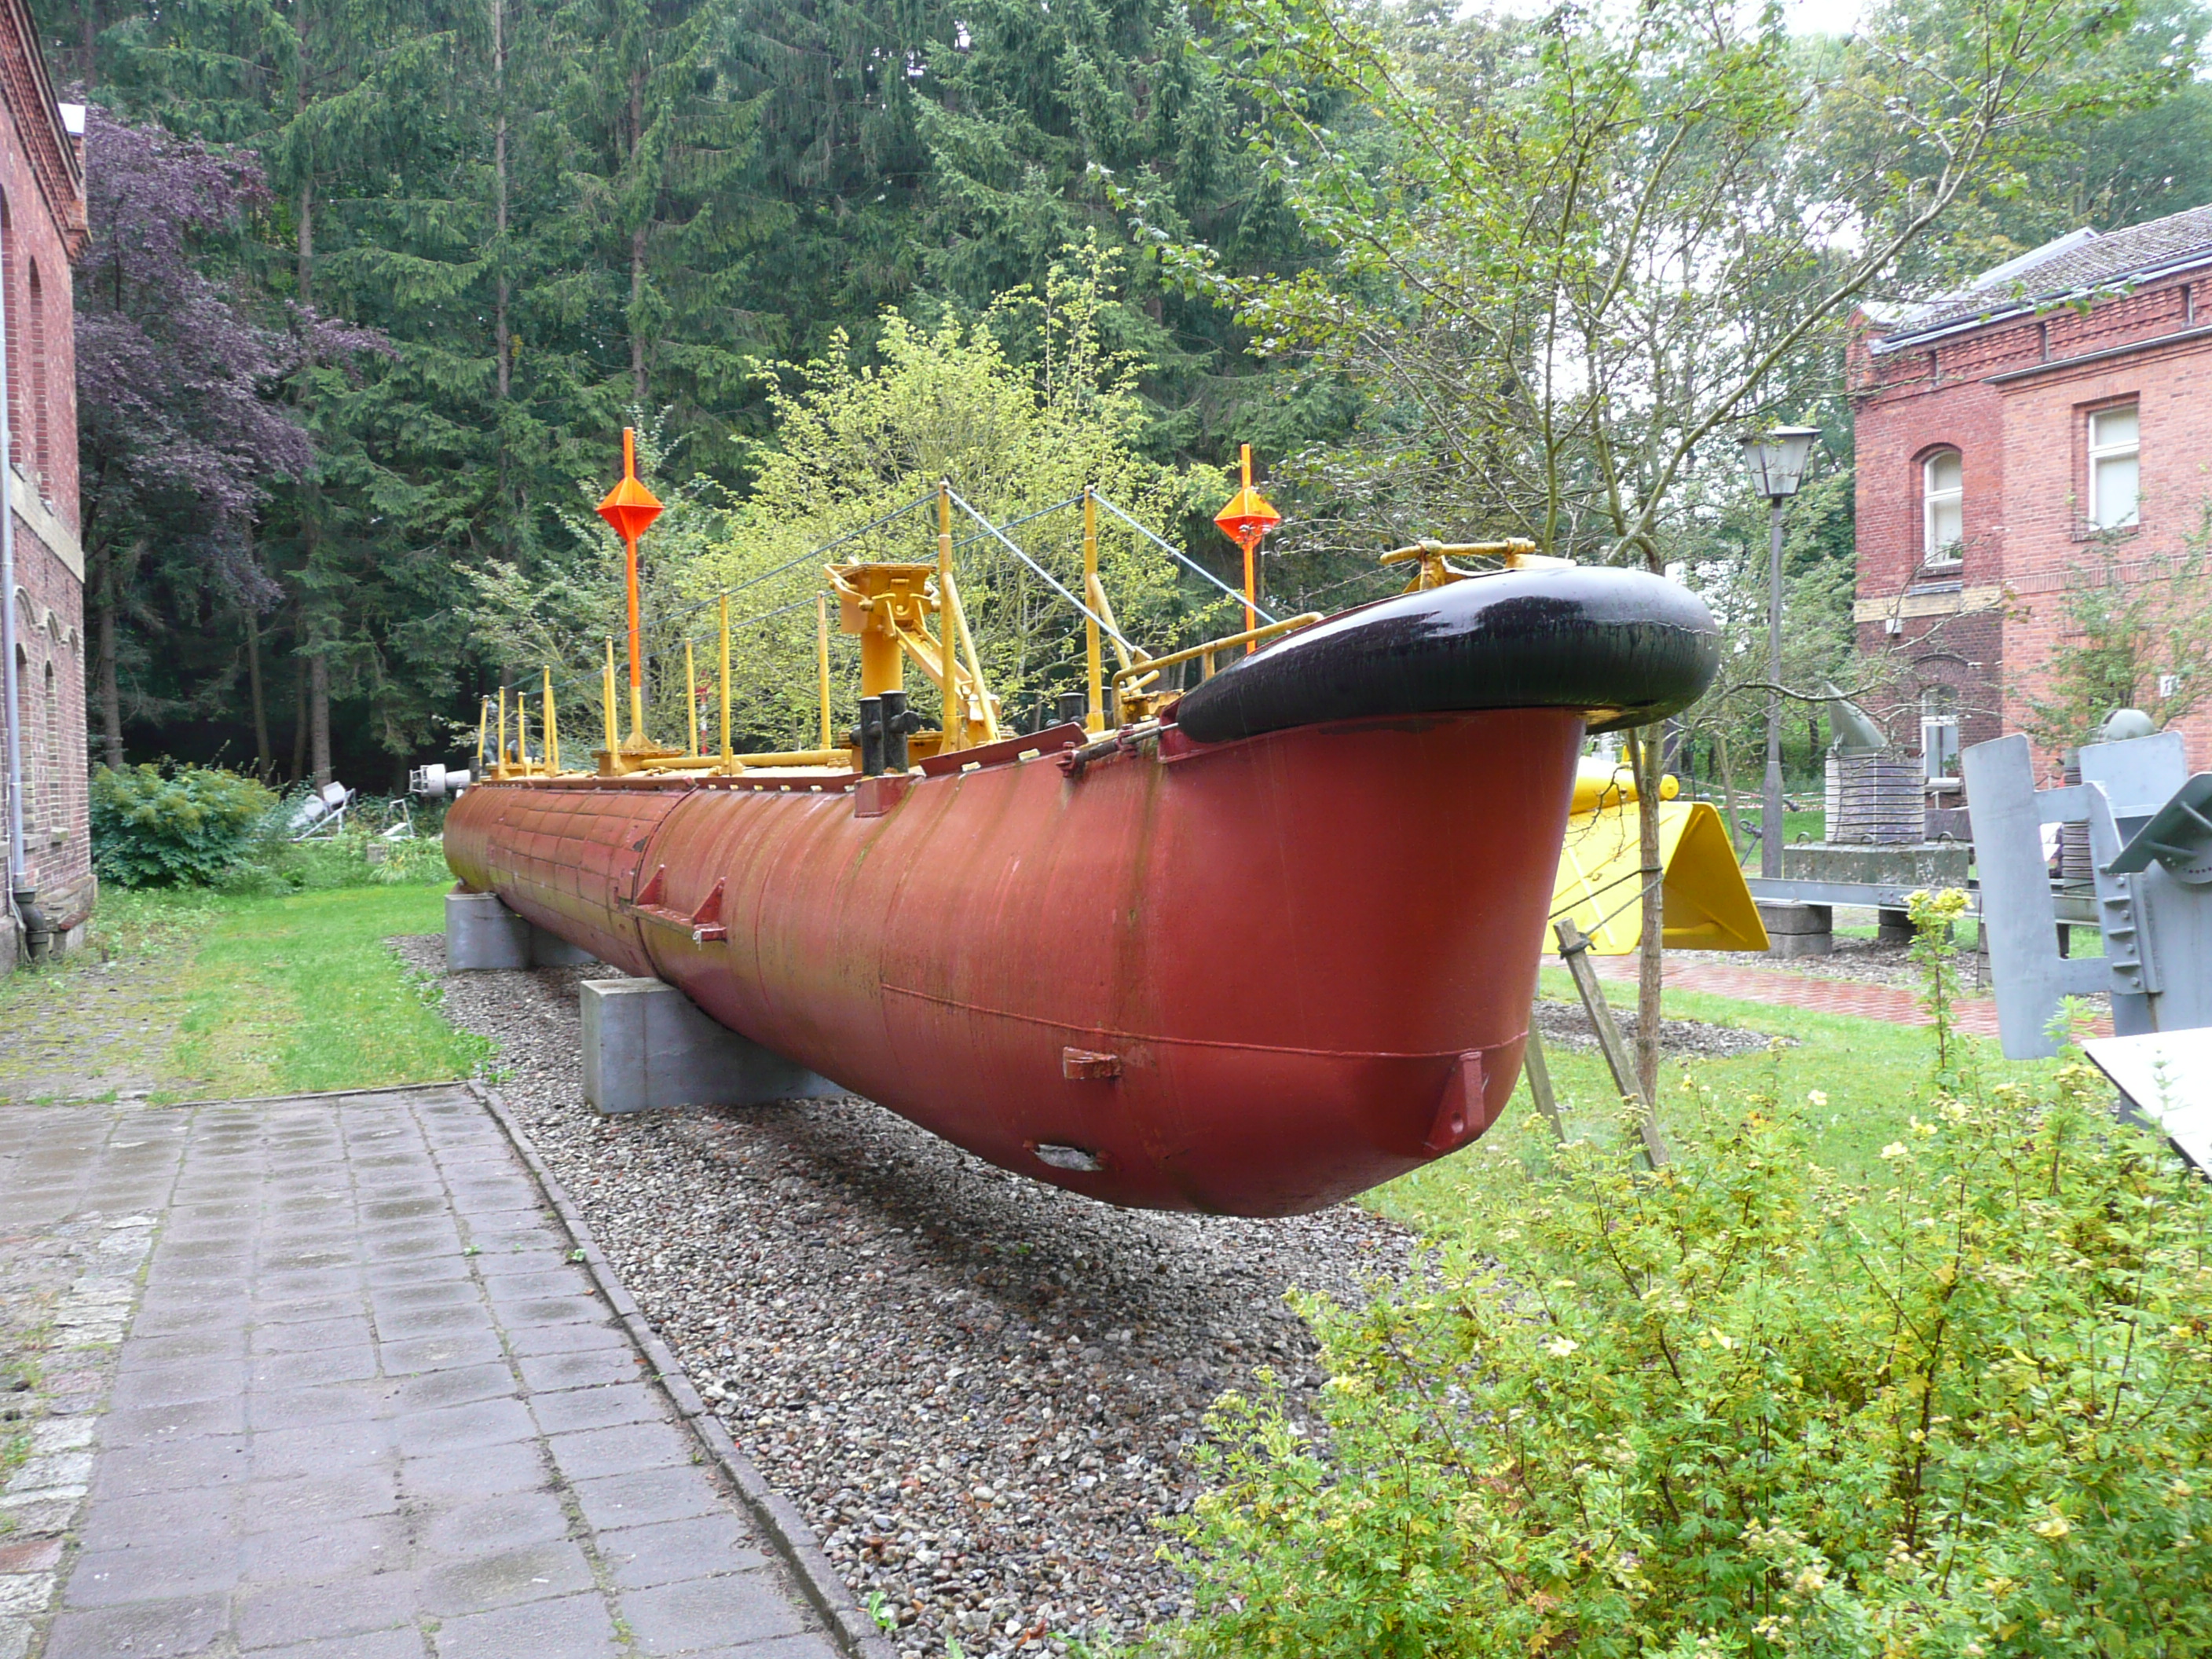 Bild 79 Marinemuseum in Stralsund/Insel Dänholm